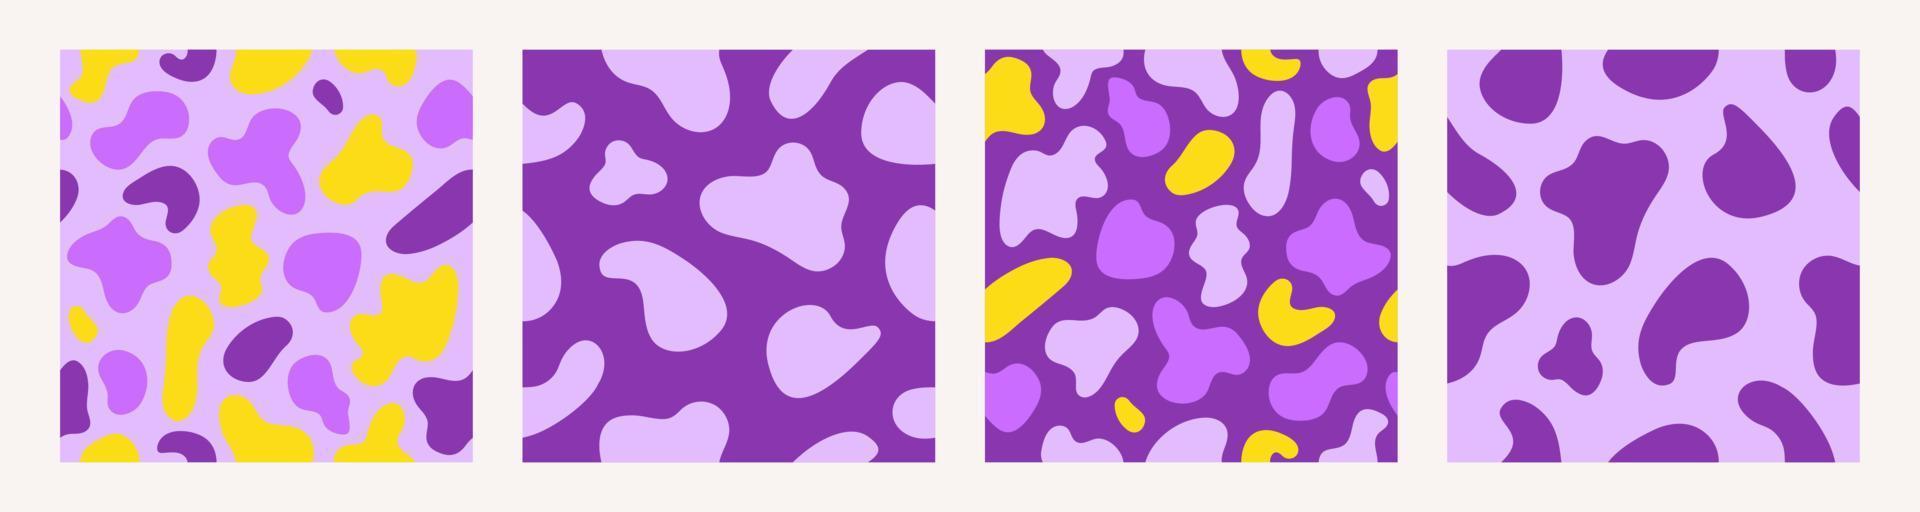 moda establecer patrones sin fisuras de pieles de animales manchados. impresión abstracta en colores amarillo violeta. ilustración vectorial vector